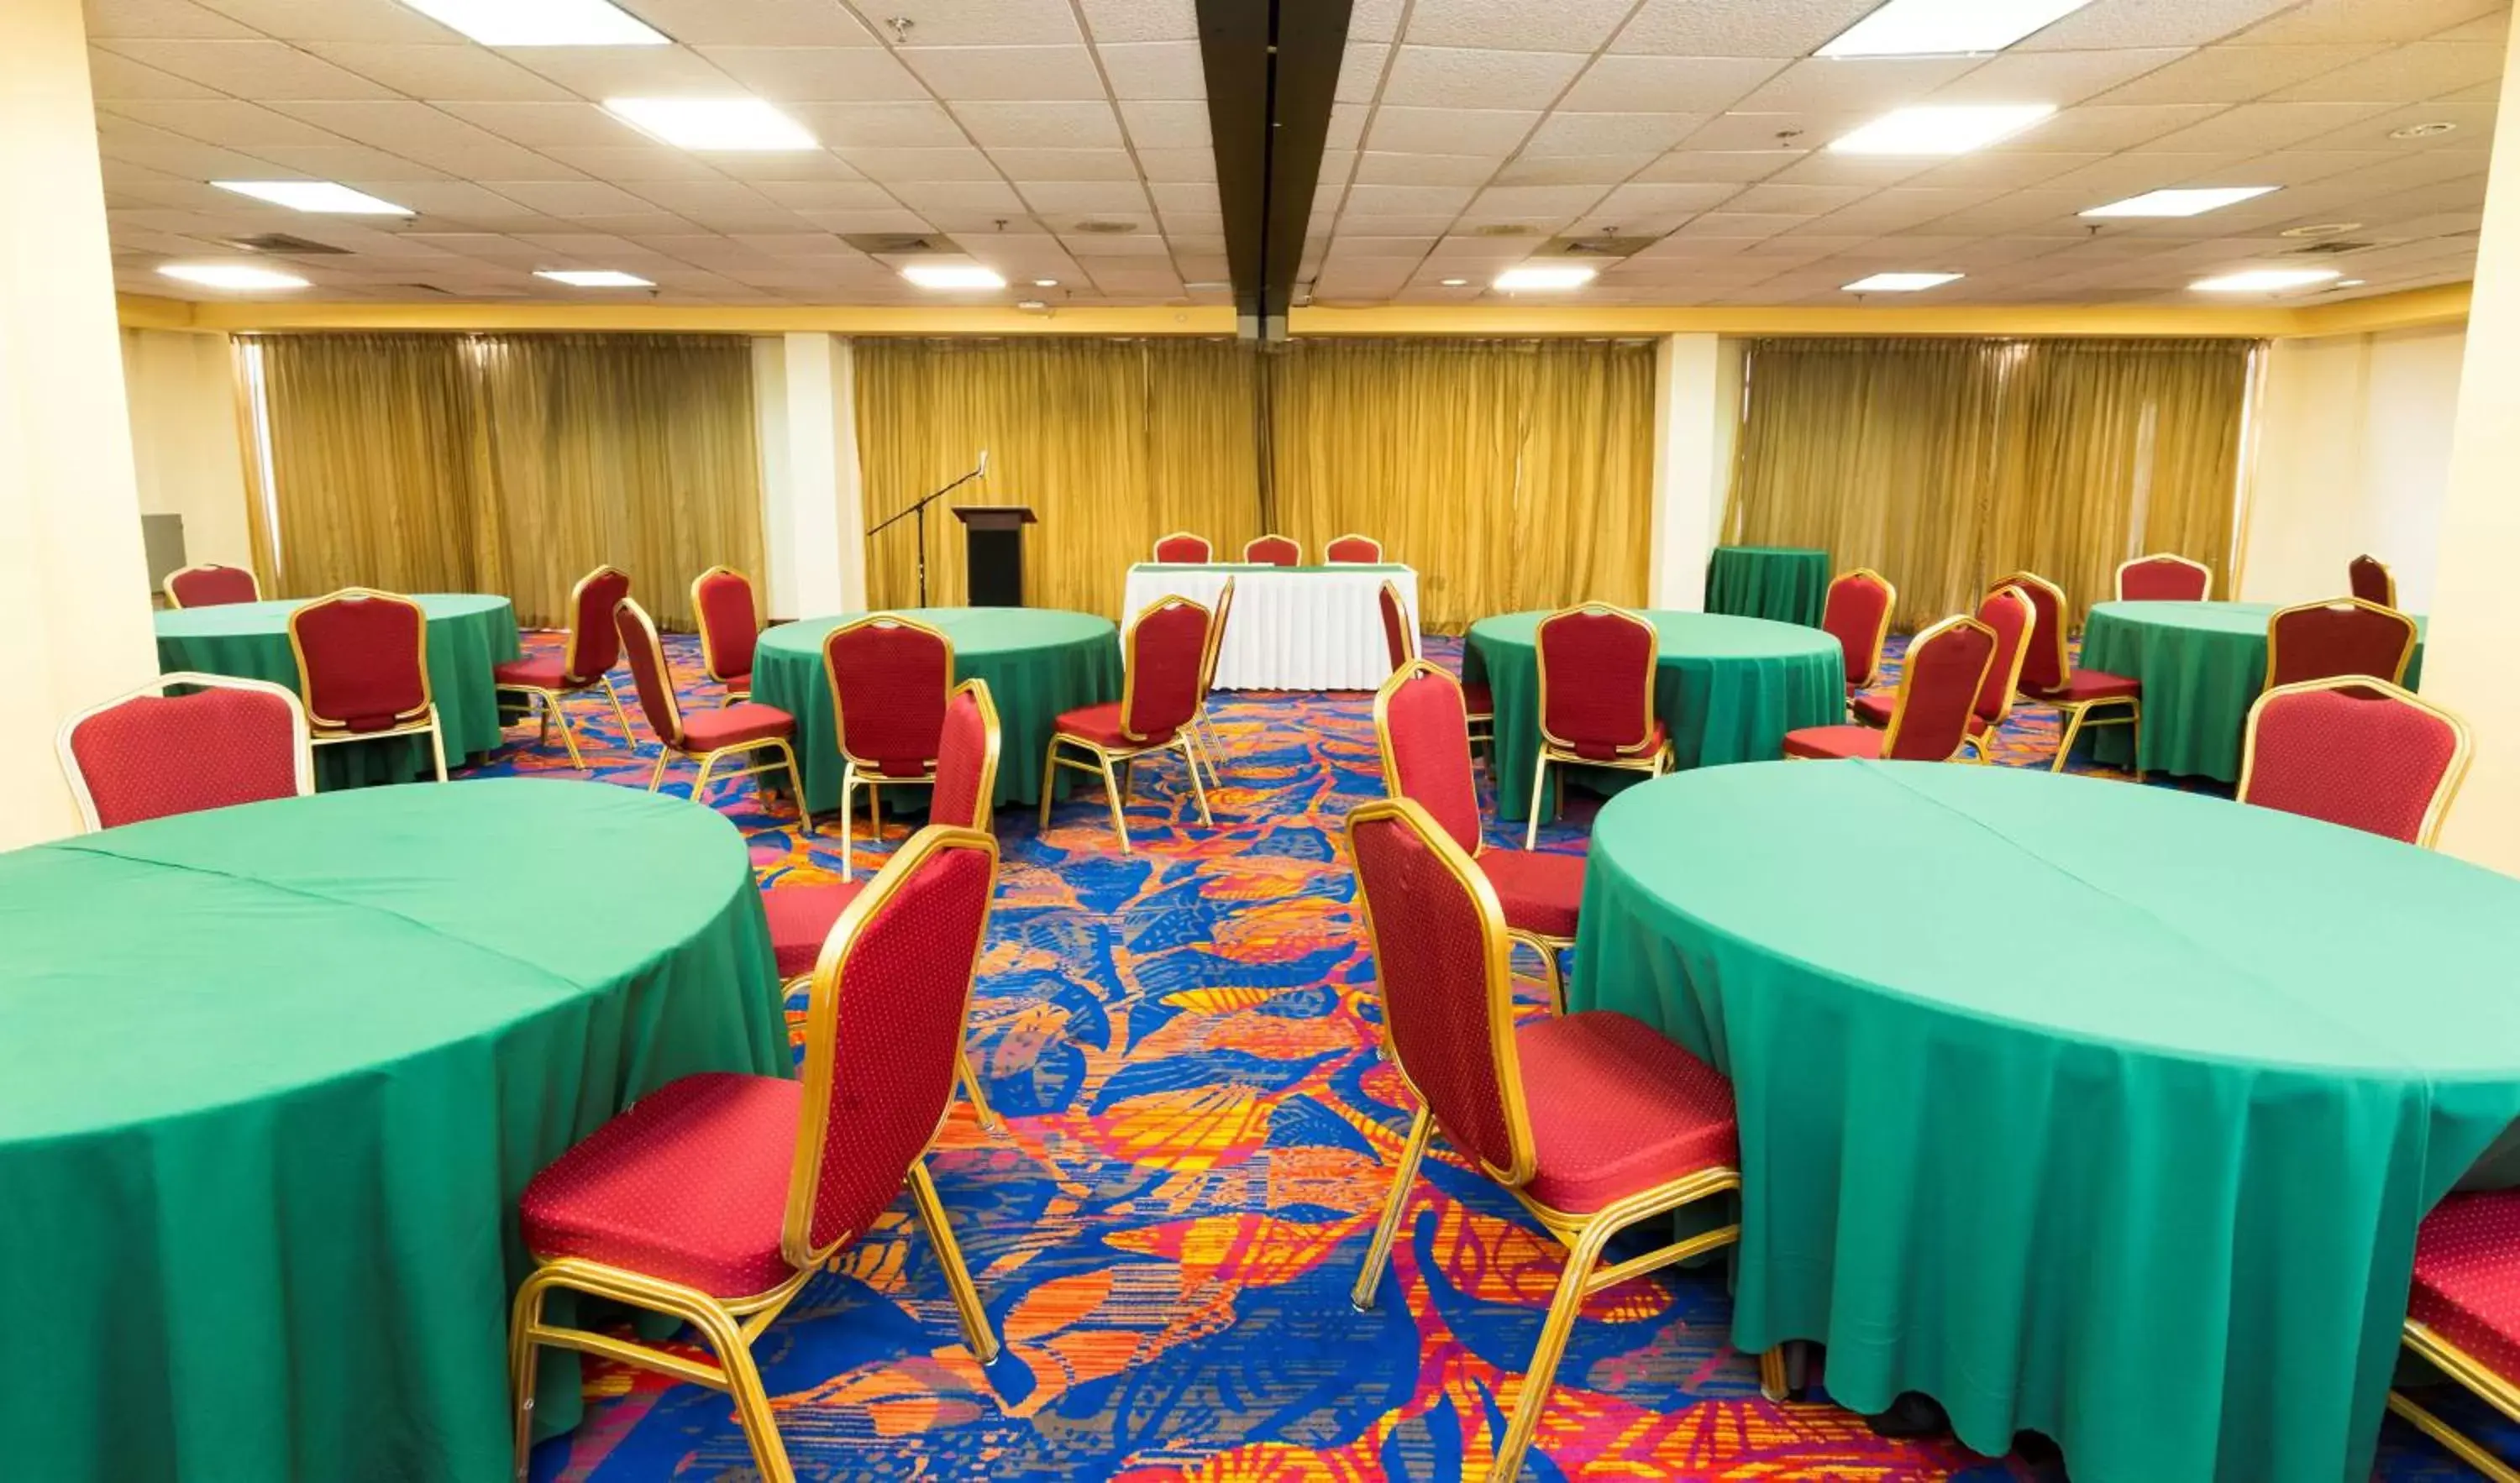 Banquet/Function facilities, Banquet Facilities in Radisson Hotel Trinidad